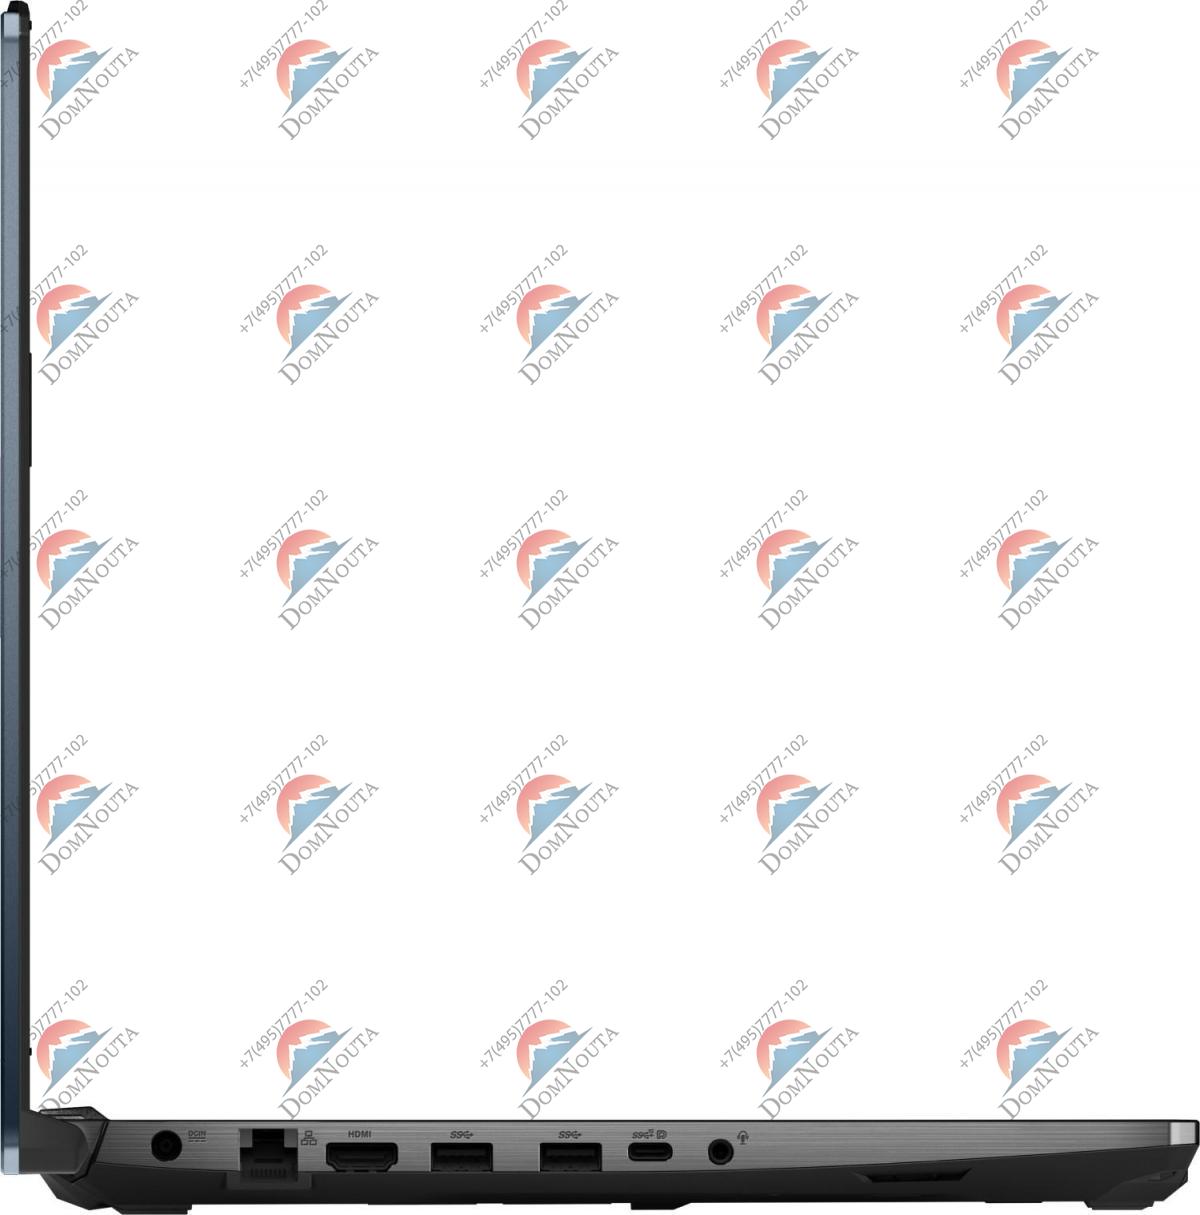 Ноутбук Asus FX506Iu